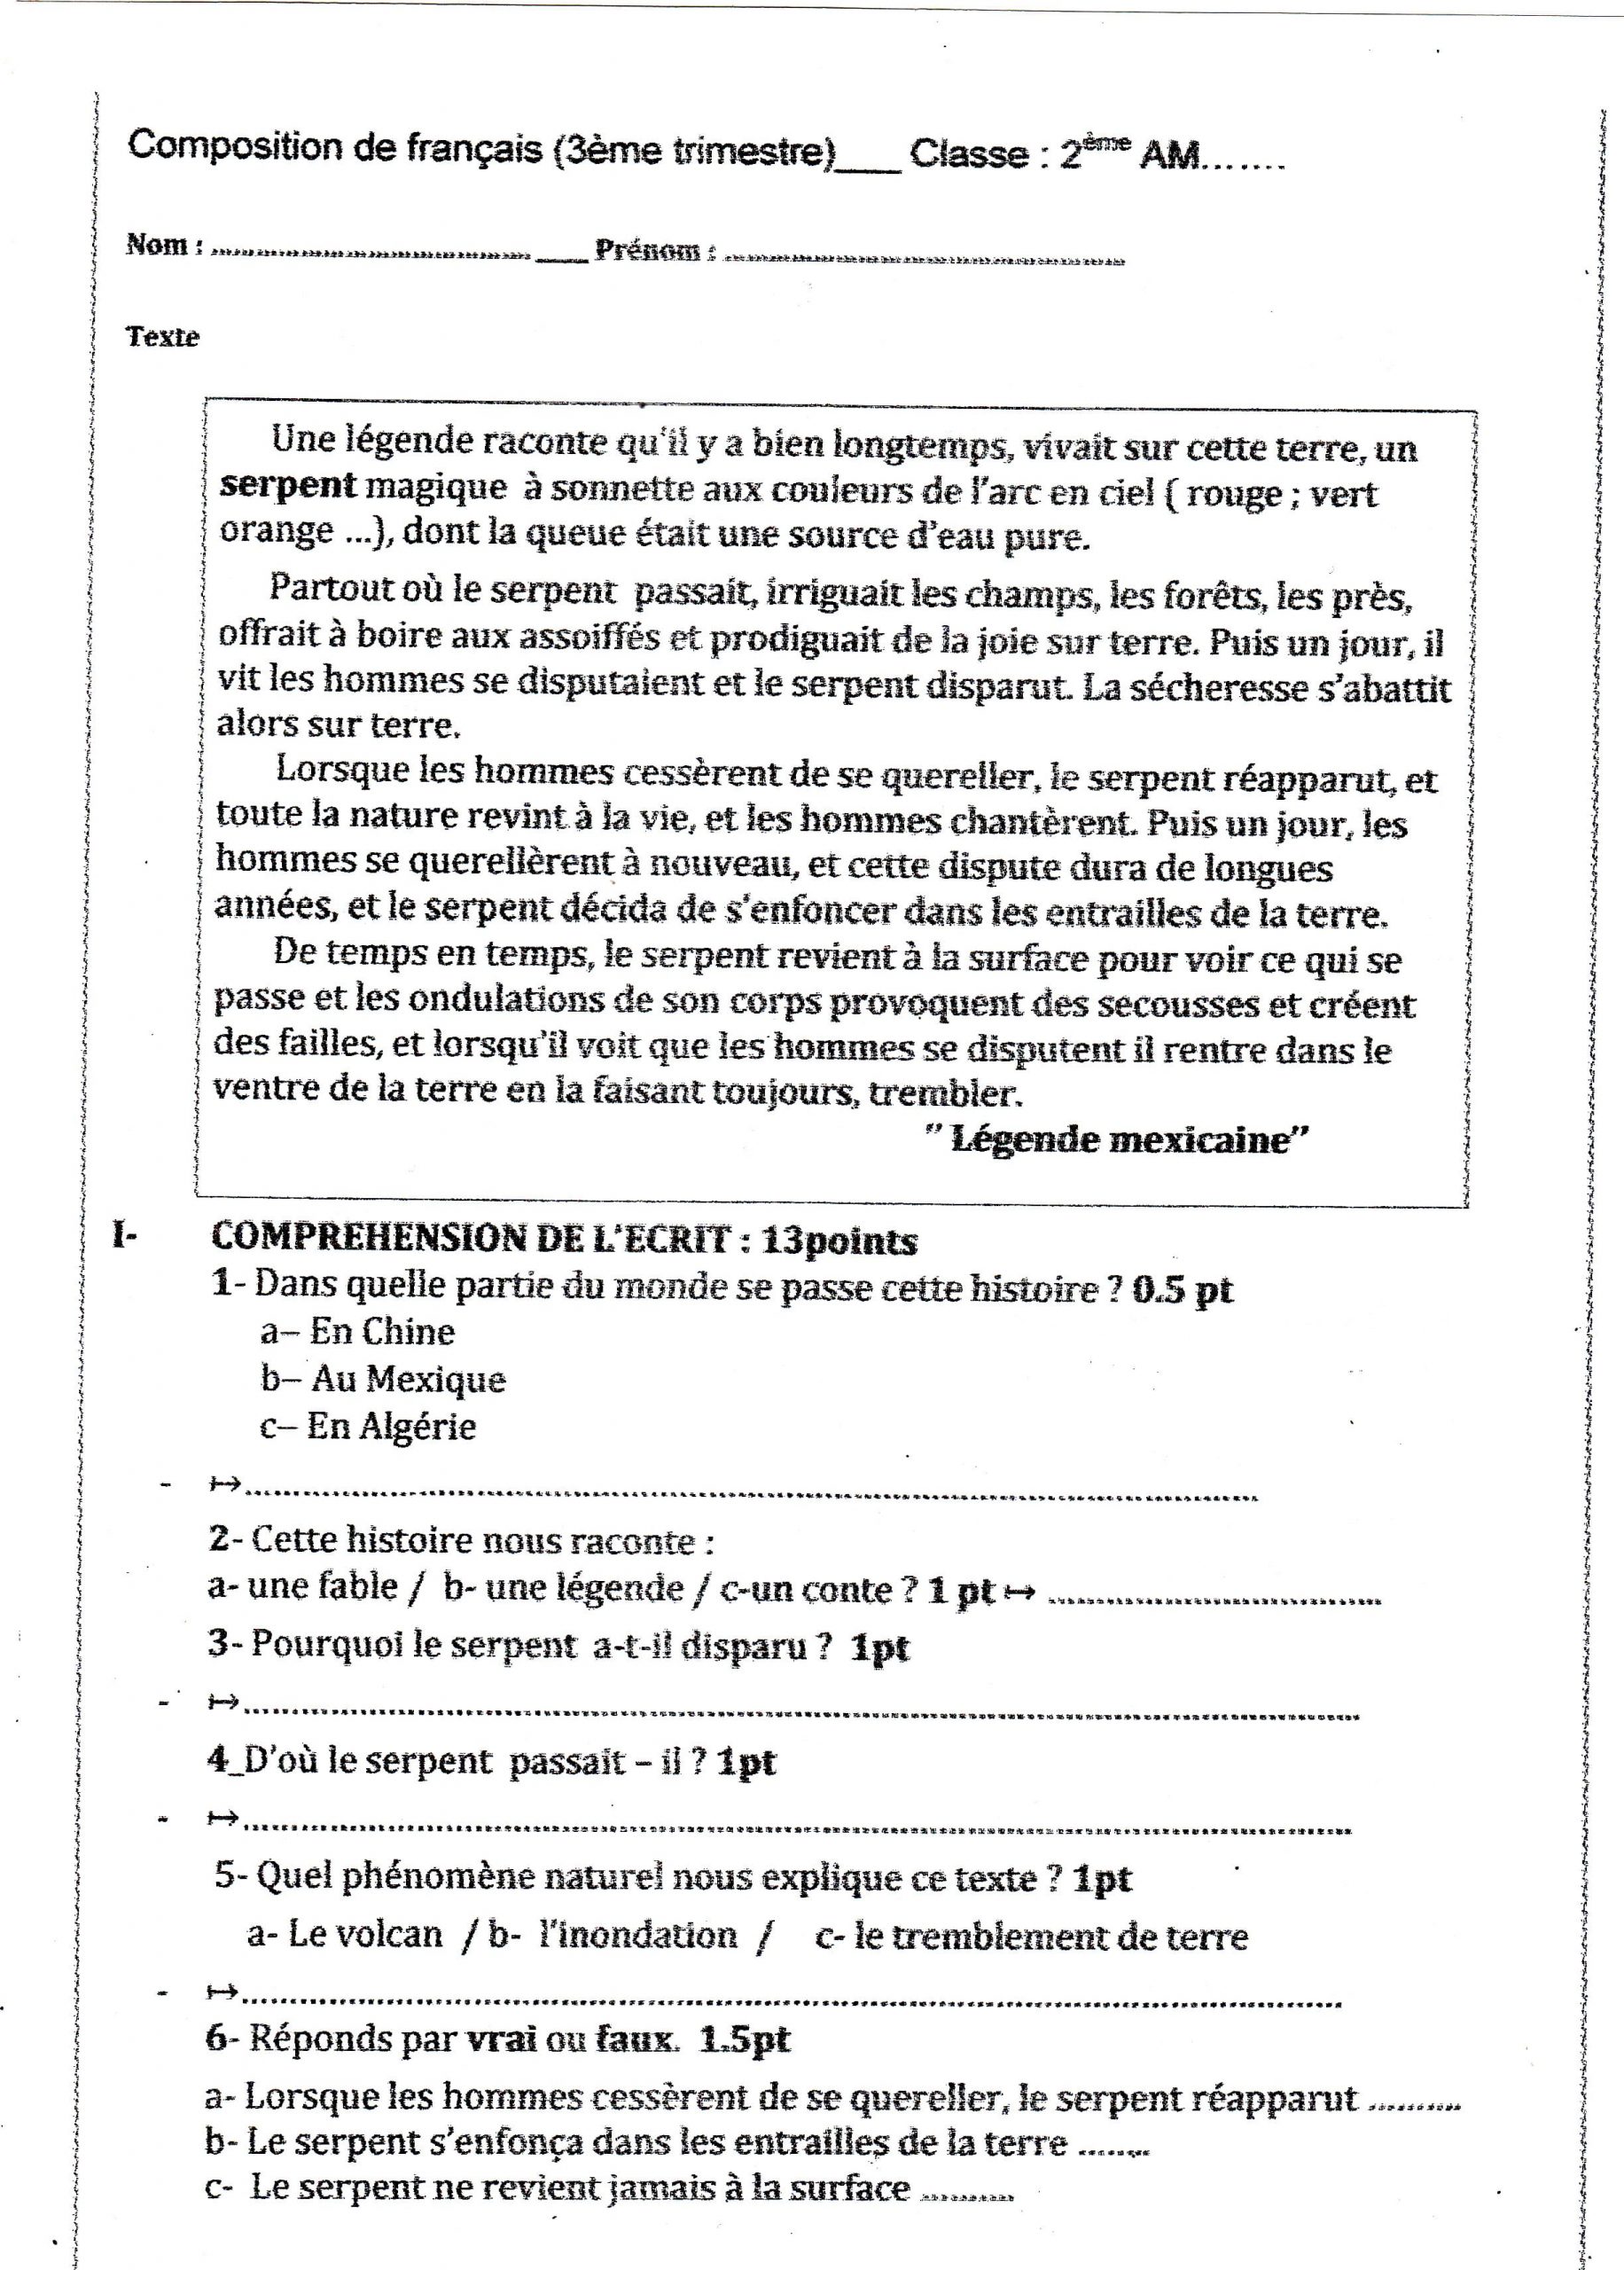 اختبار الفصل الثالث في اللغة الفرنسية السنة الثانية متوسط - الموضوع 03